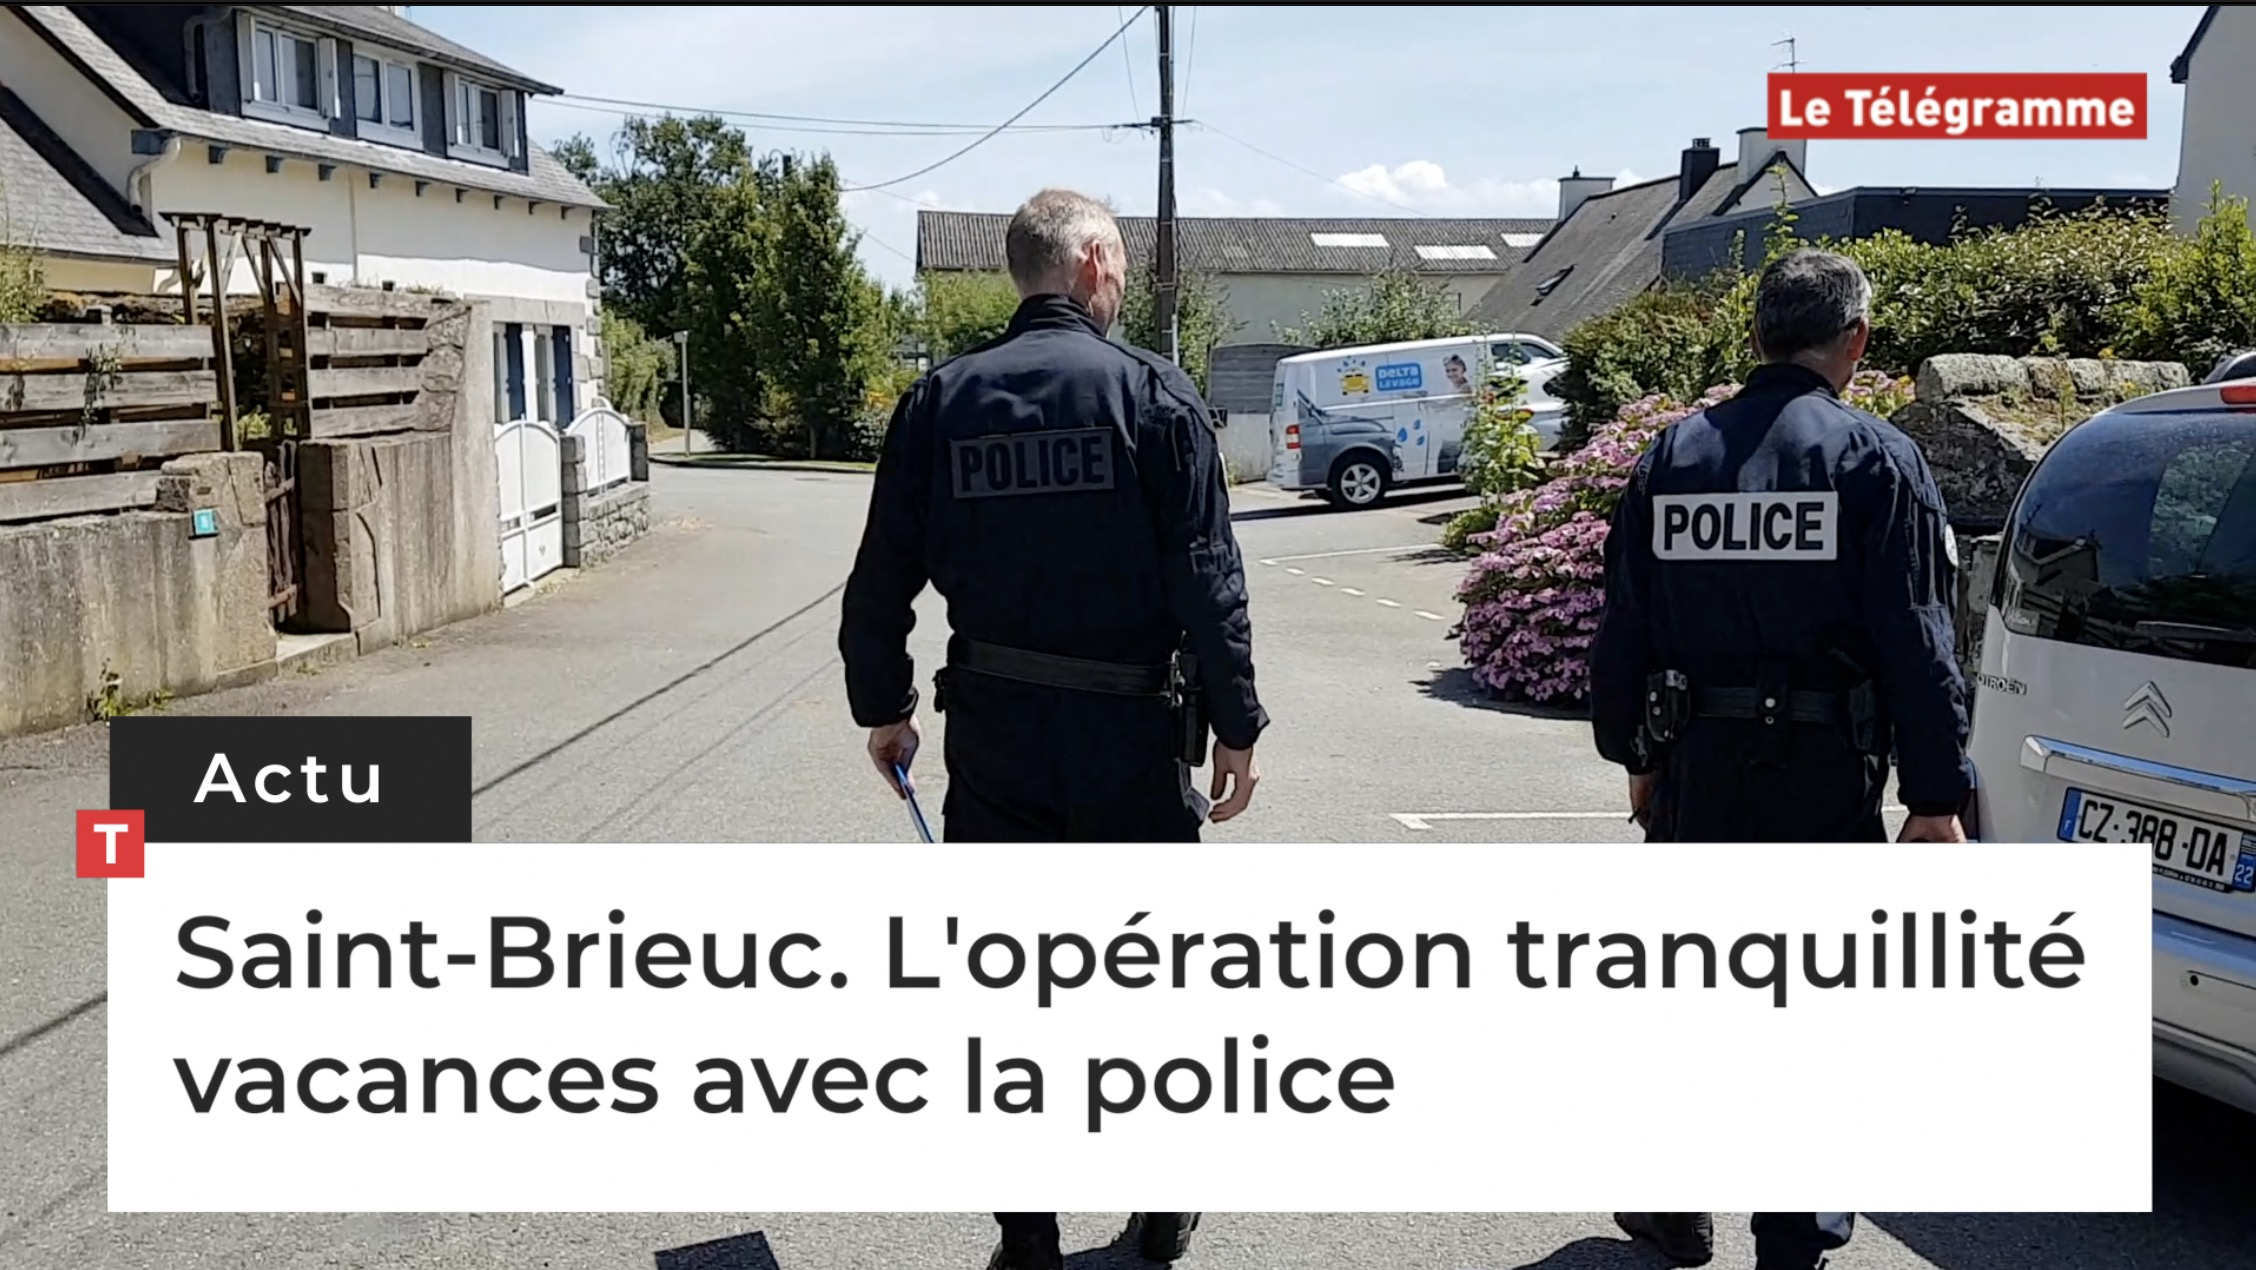 Saint-Brieuc. L'opération tranquillité vacances avec la police (Le Télégramme)